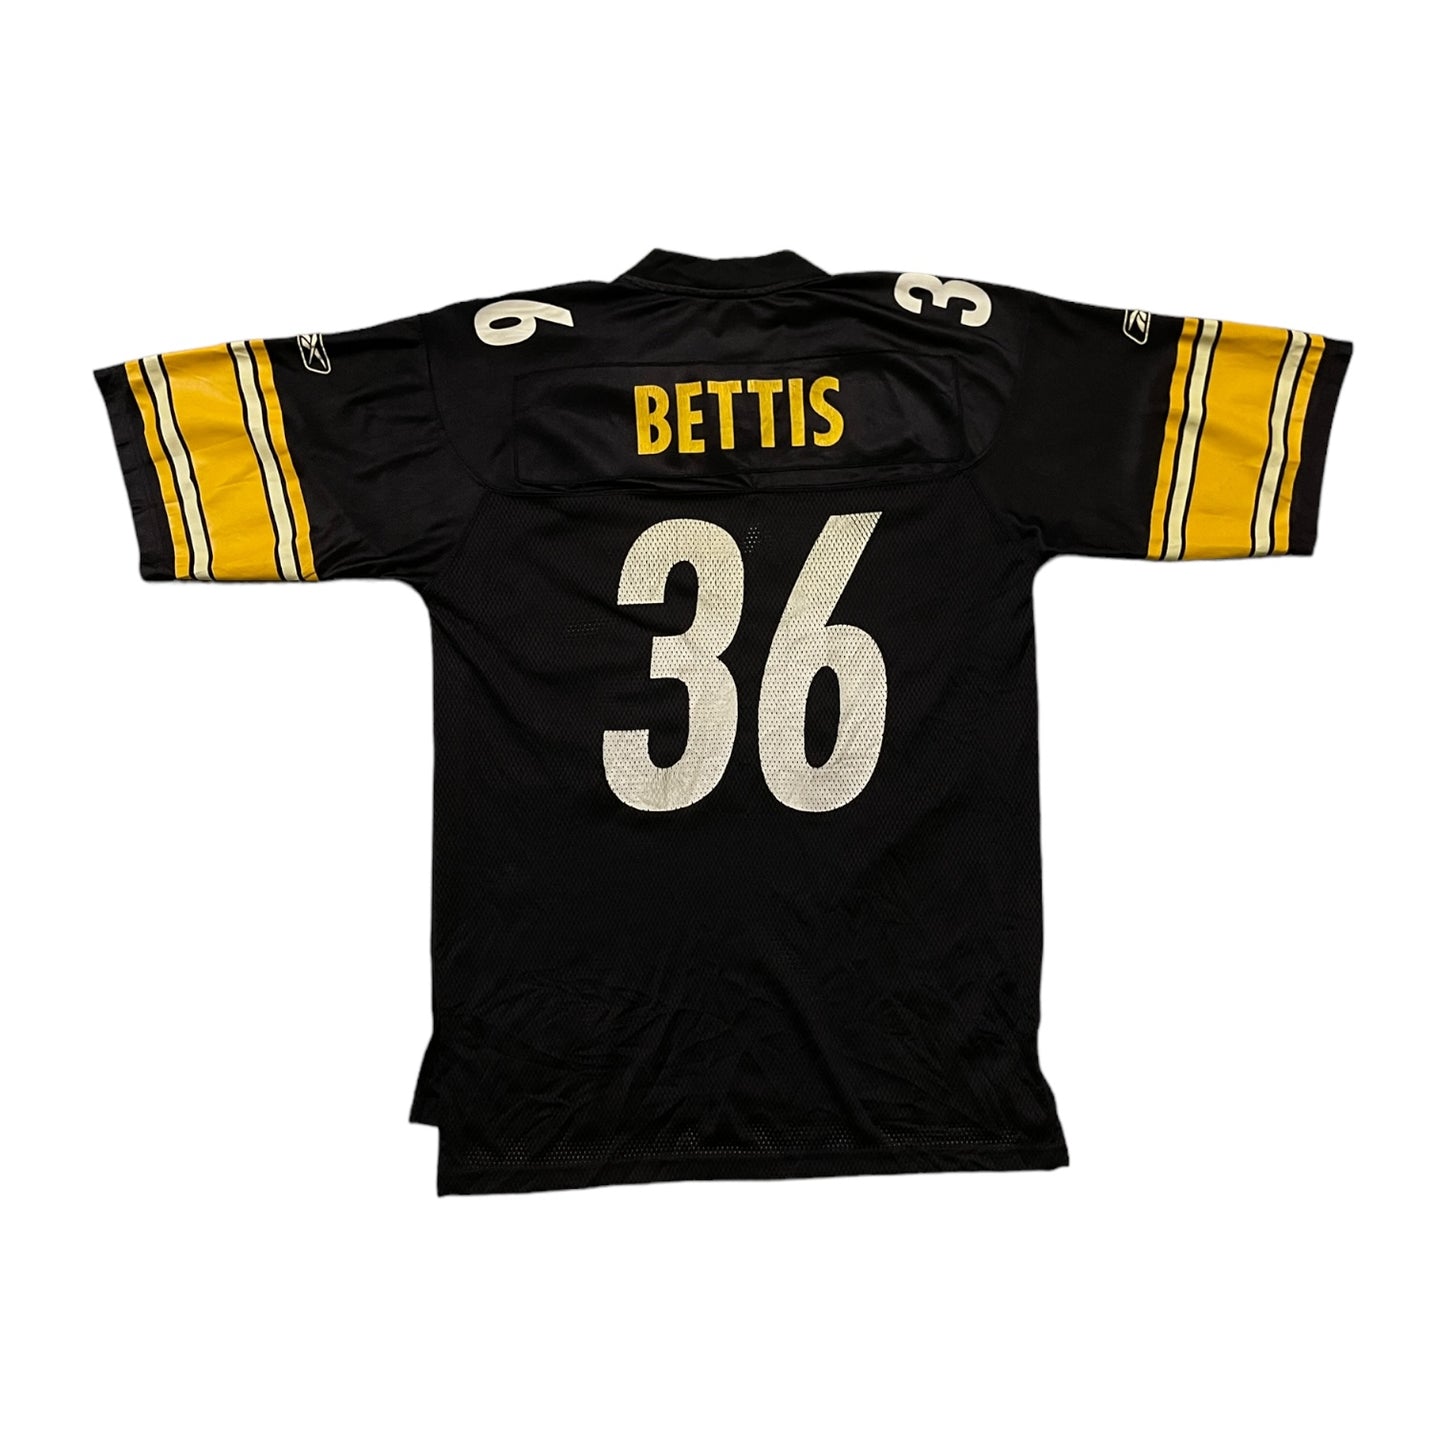 Reebok Steelers "Bettis" 36 NFL Jersey